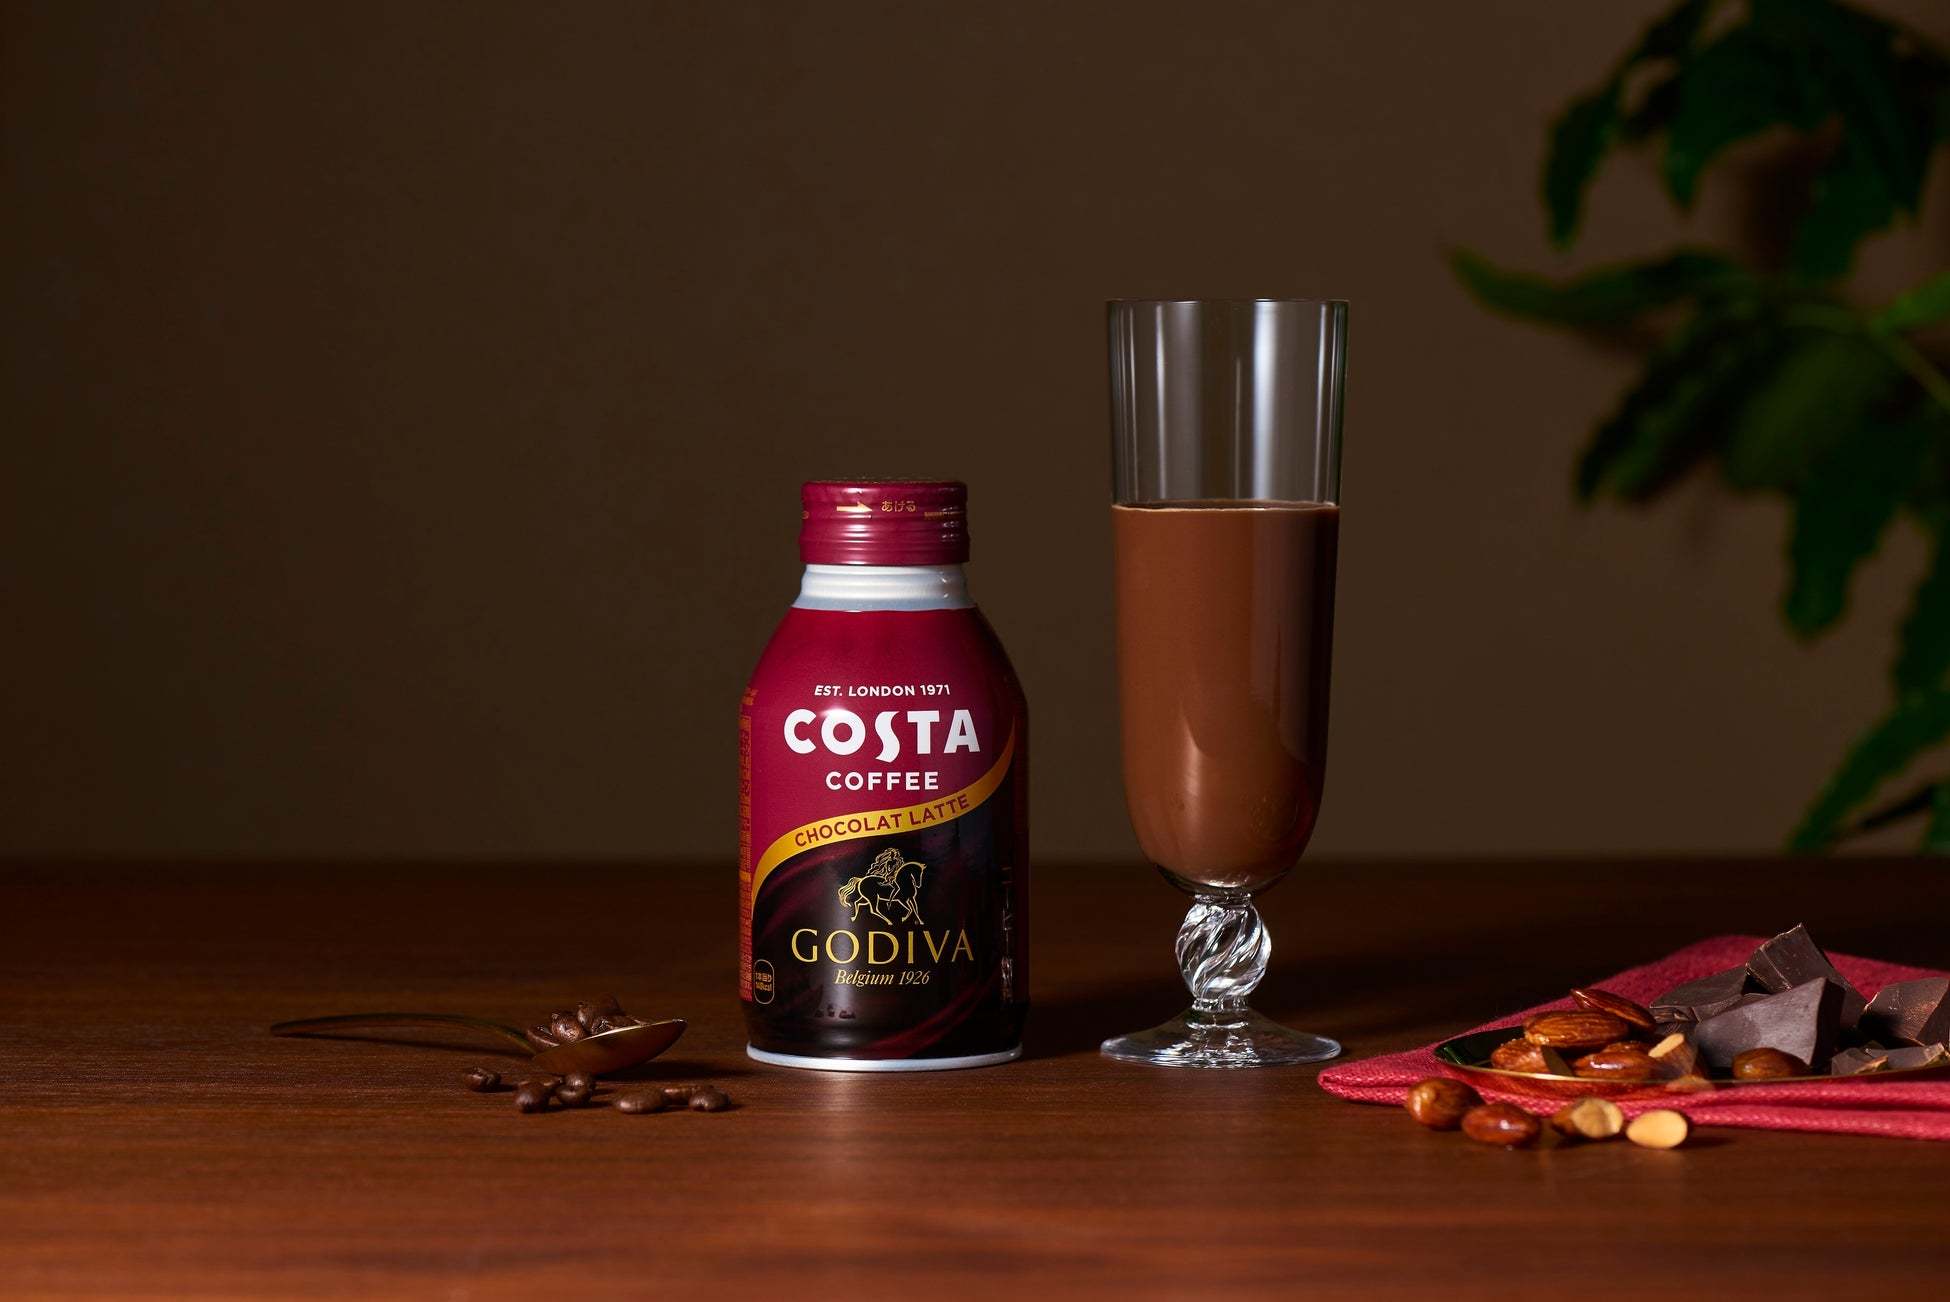 ヨーロッパ No.1のカフェブランド「コスタコーヒー」が「ゴディバ」と初コラボレーション「COSTA×GODIVAショコララテ」1月30日（月）から新発売